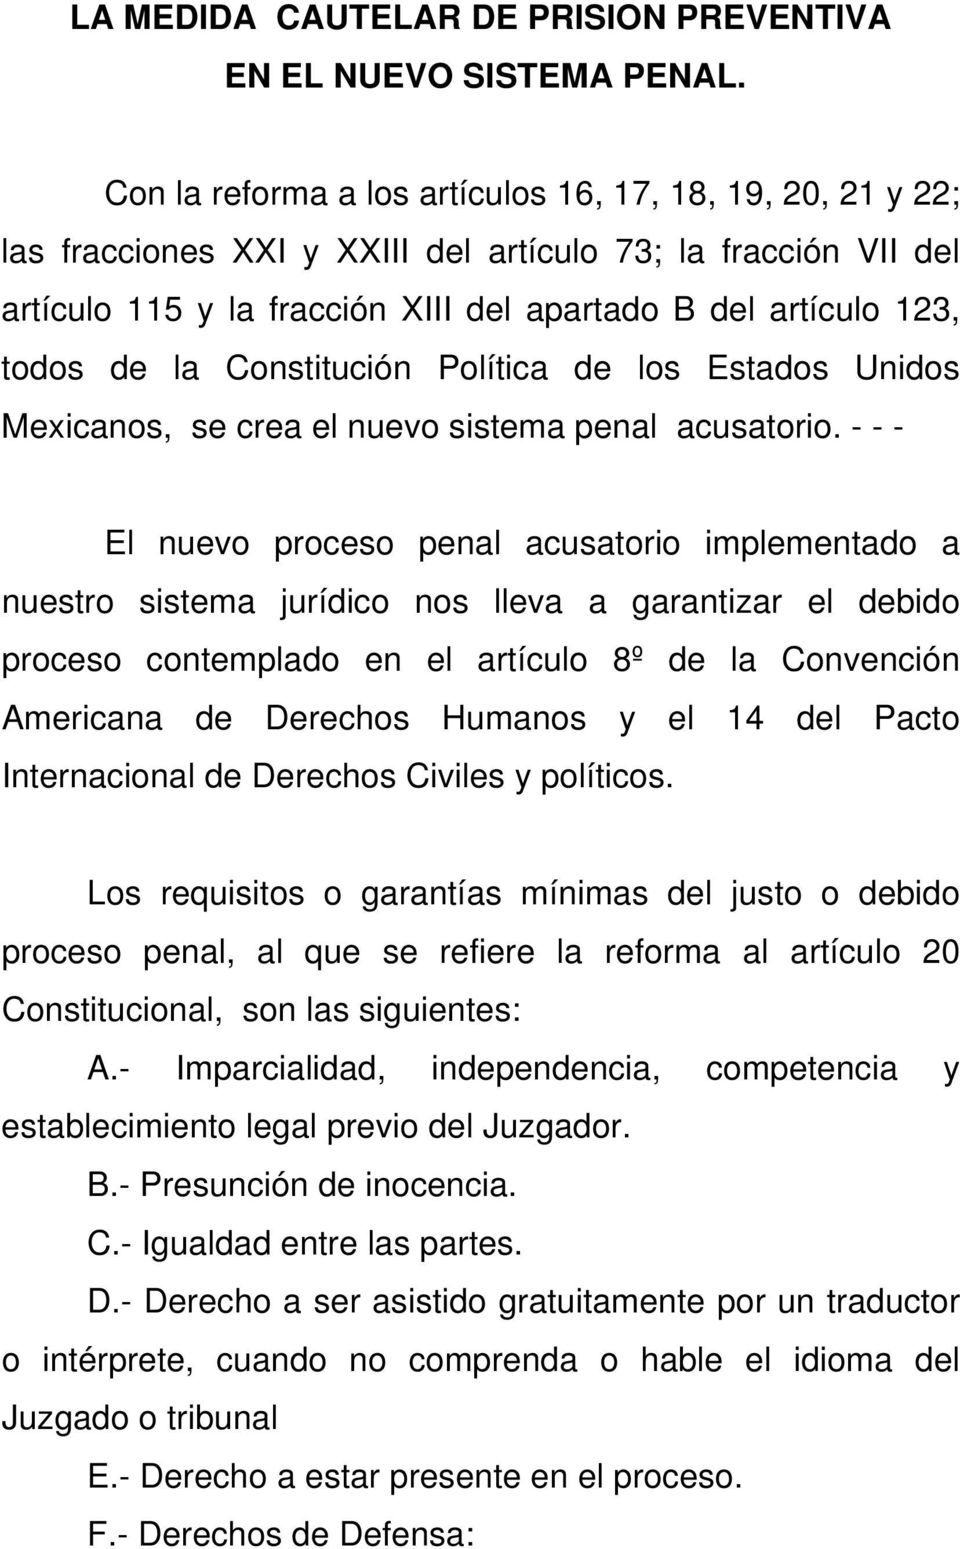 la Constitución Política de los Estados Unidos Mexicanos, se crea el nuevo sistema penal acusatorio.